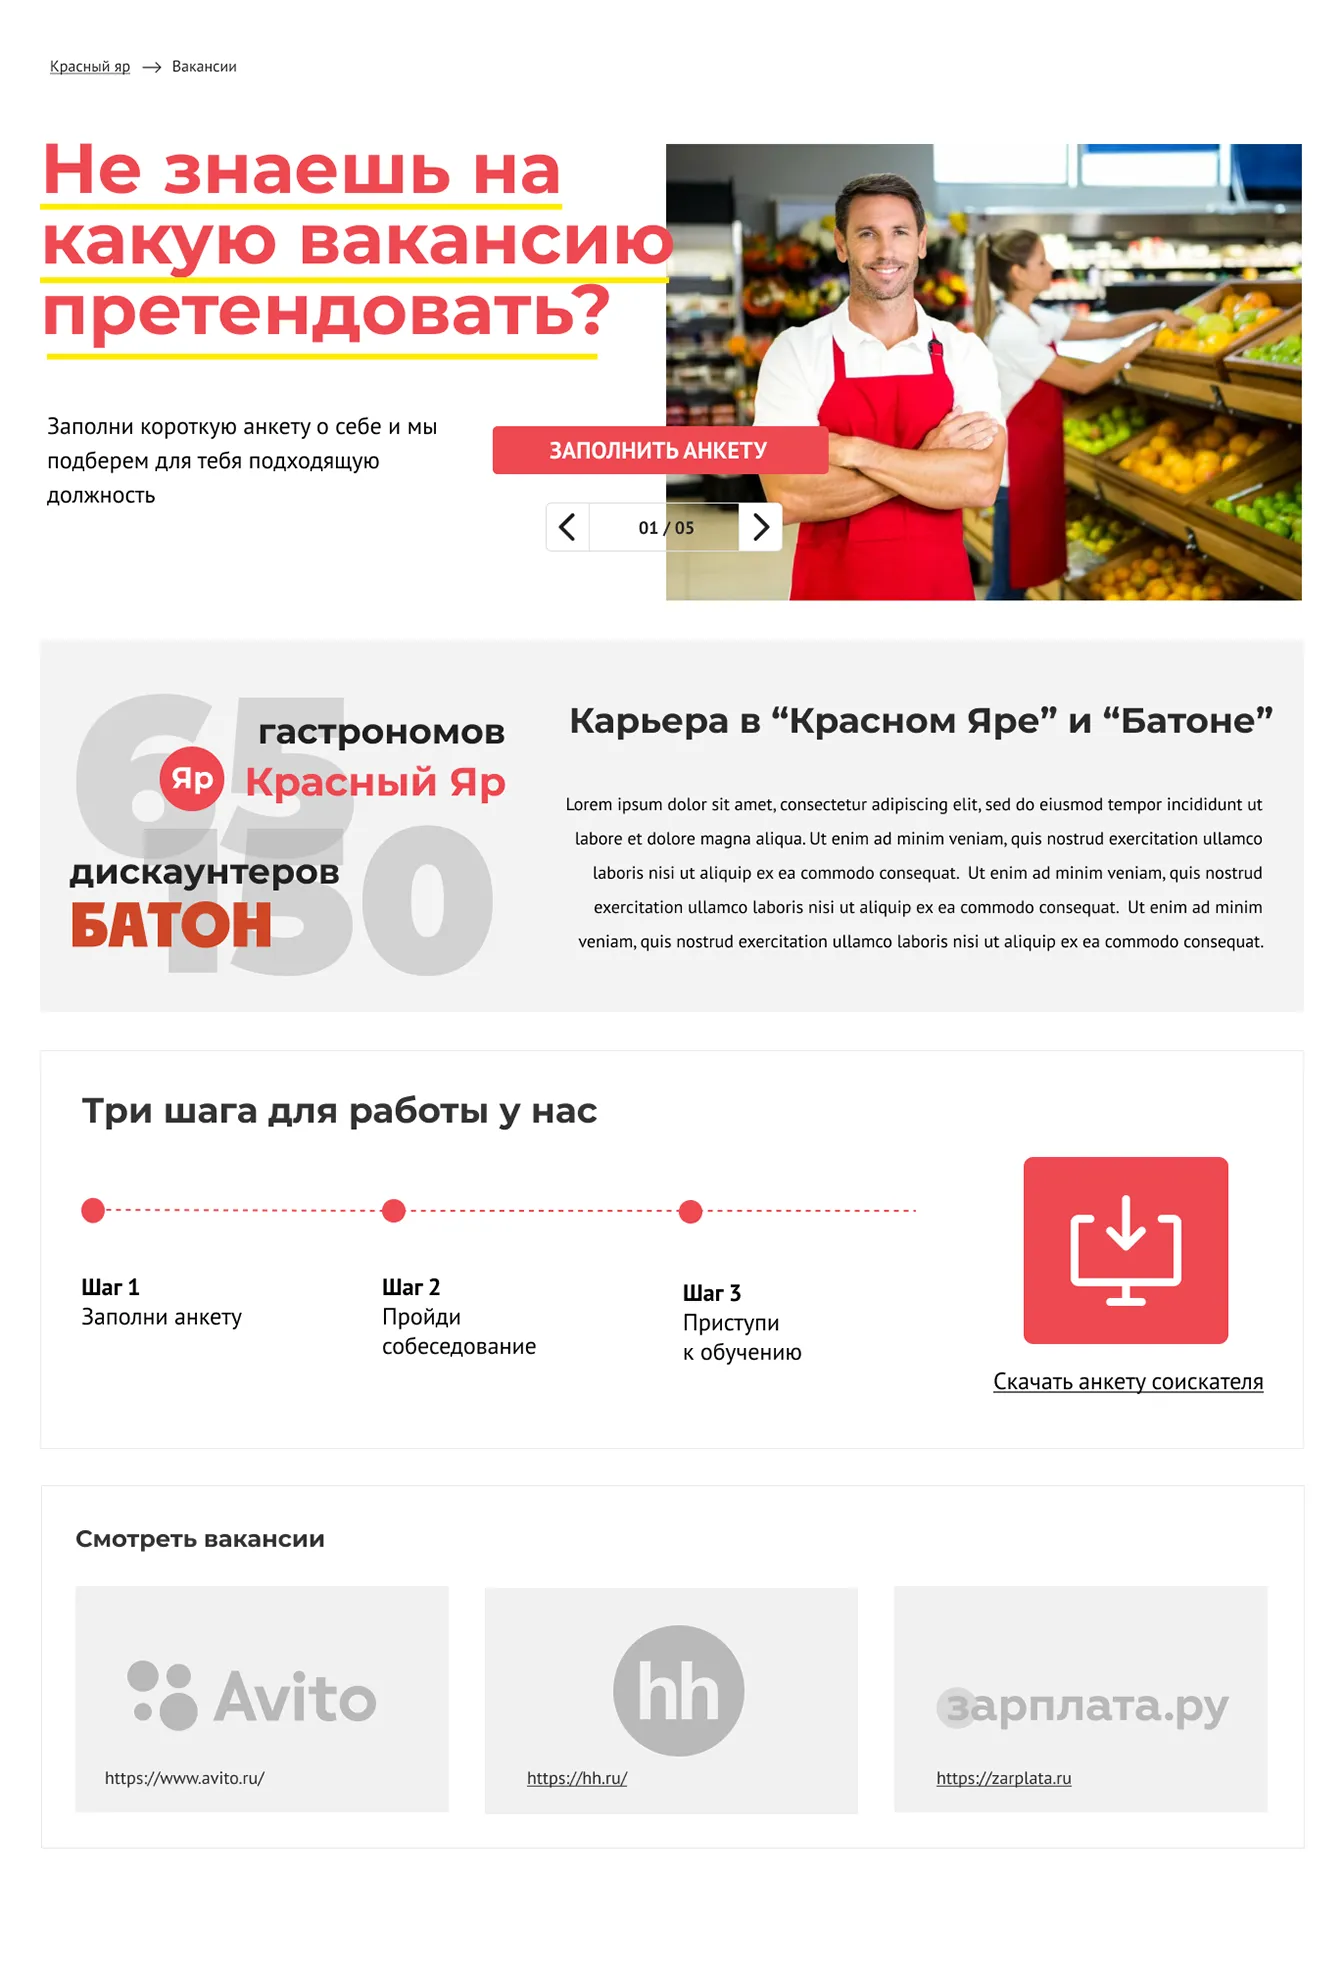 Создание дизайна сайта сети гипермаркетов Figma